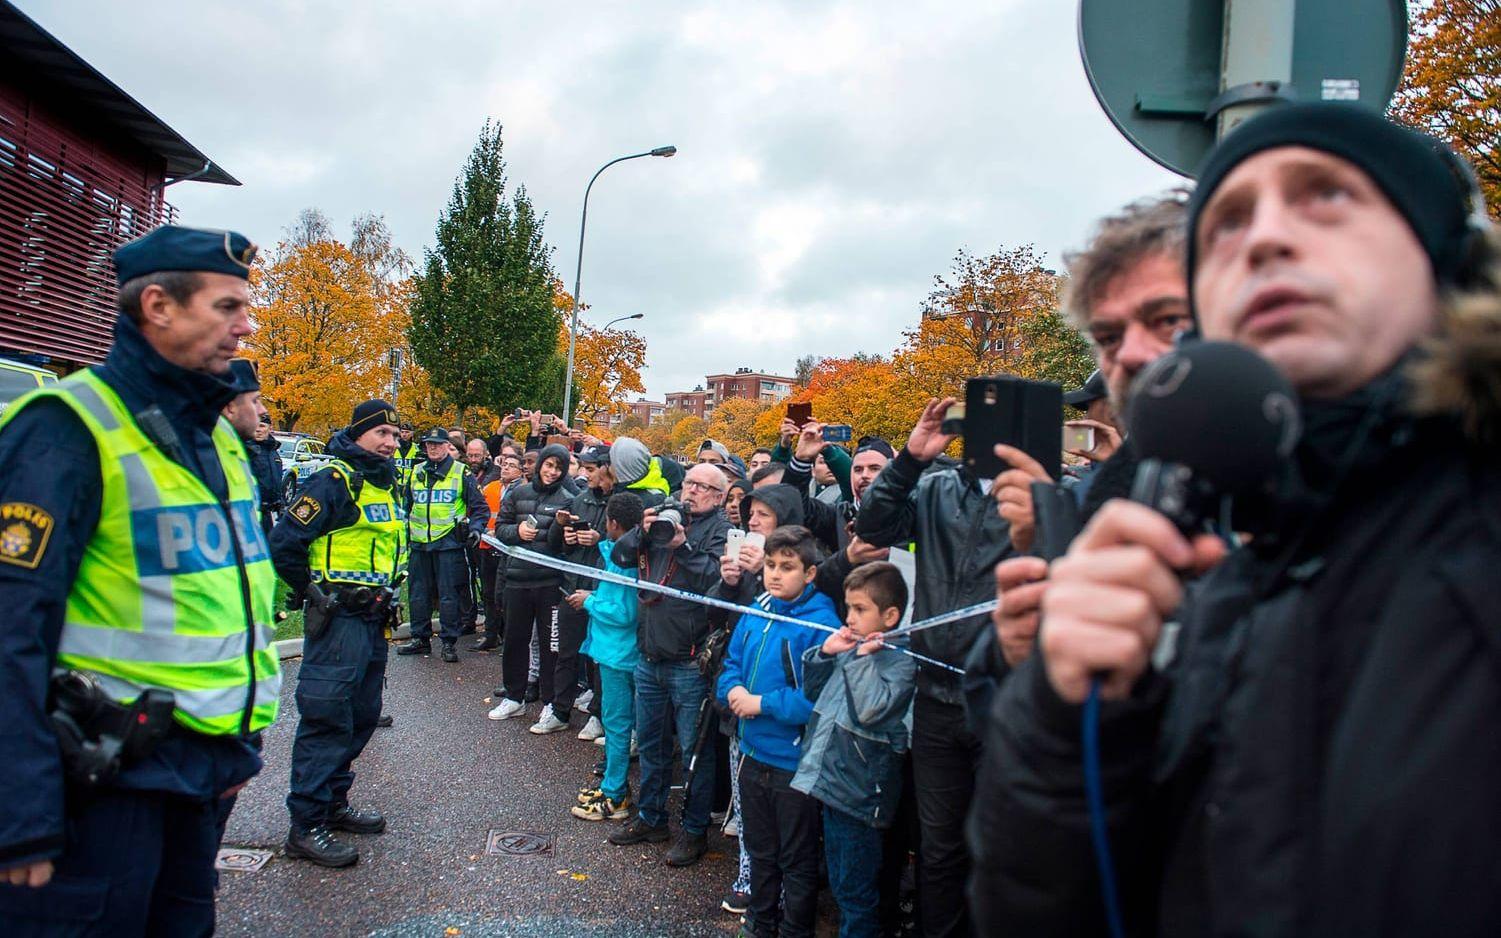 Snabbt samlades flera hundra oroliga människor utanför Kronan. Bild: Stefan Bennhage